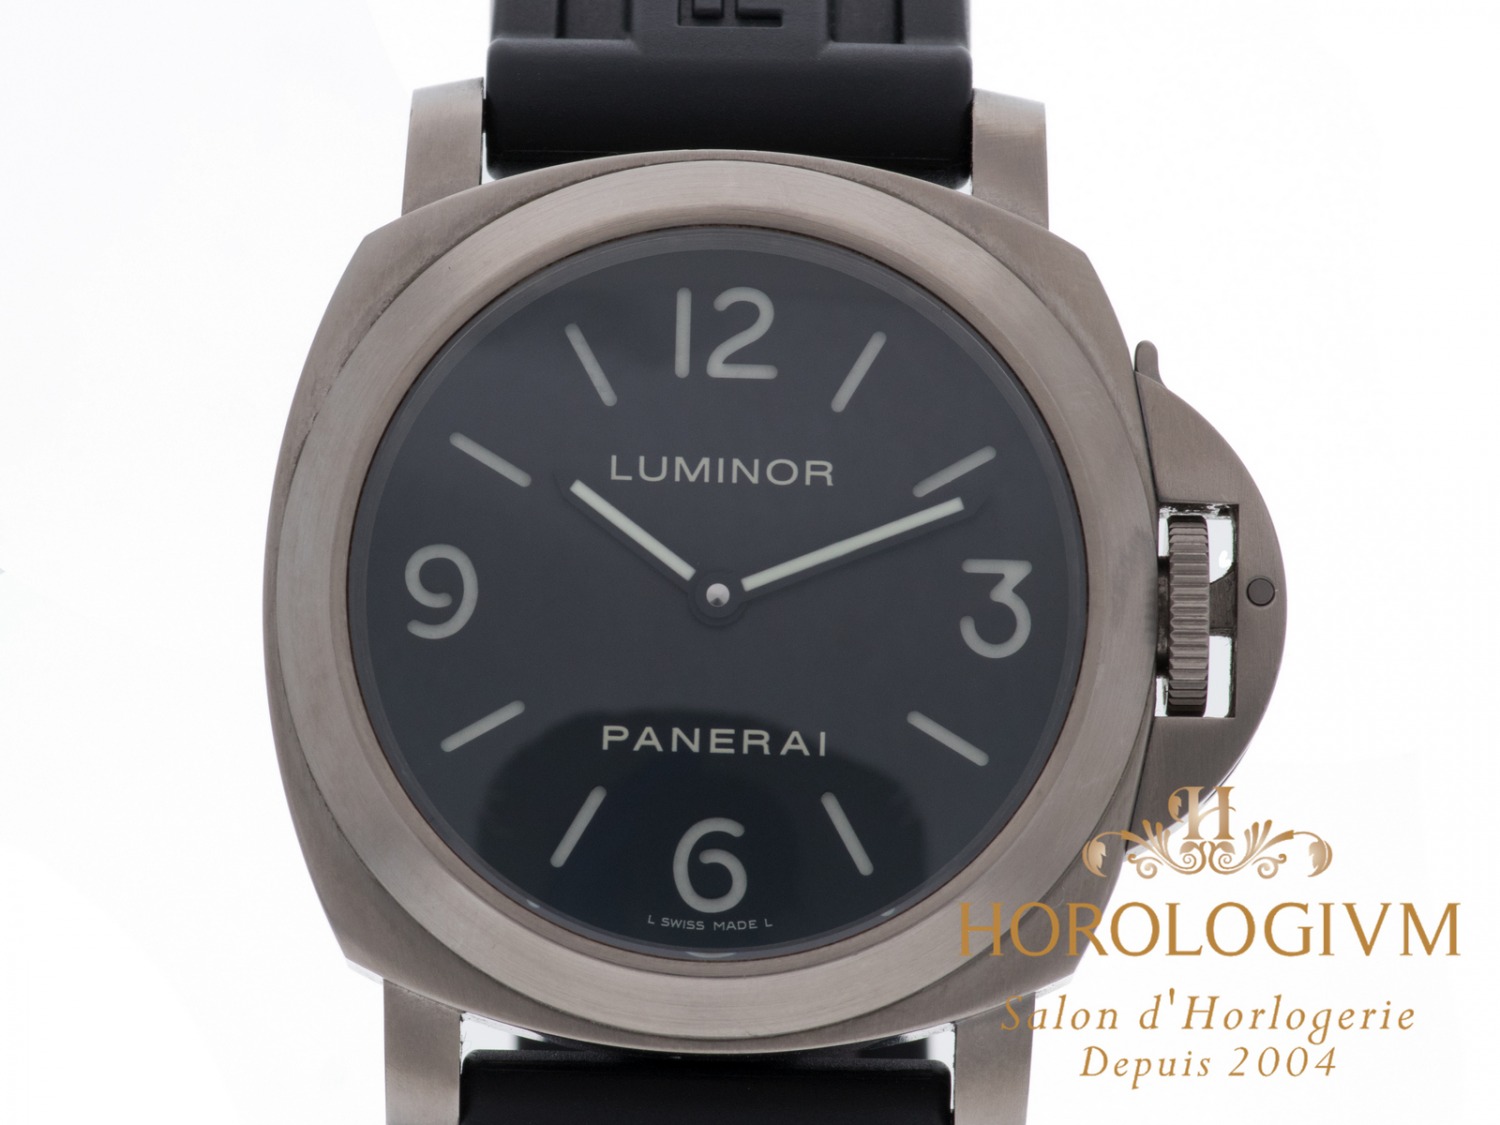 Panerai Luminor PAM00176 watch, brushed grey